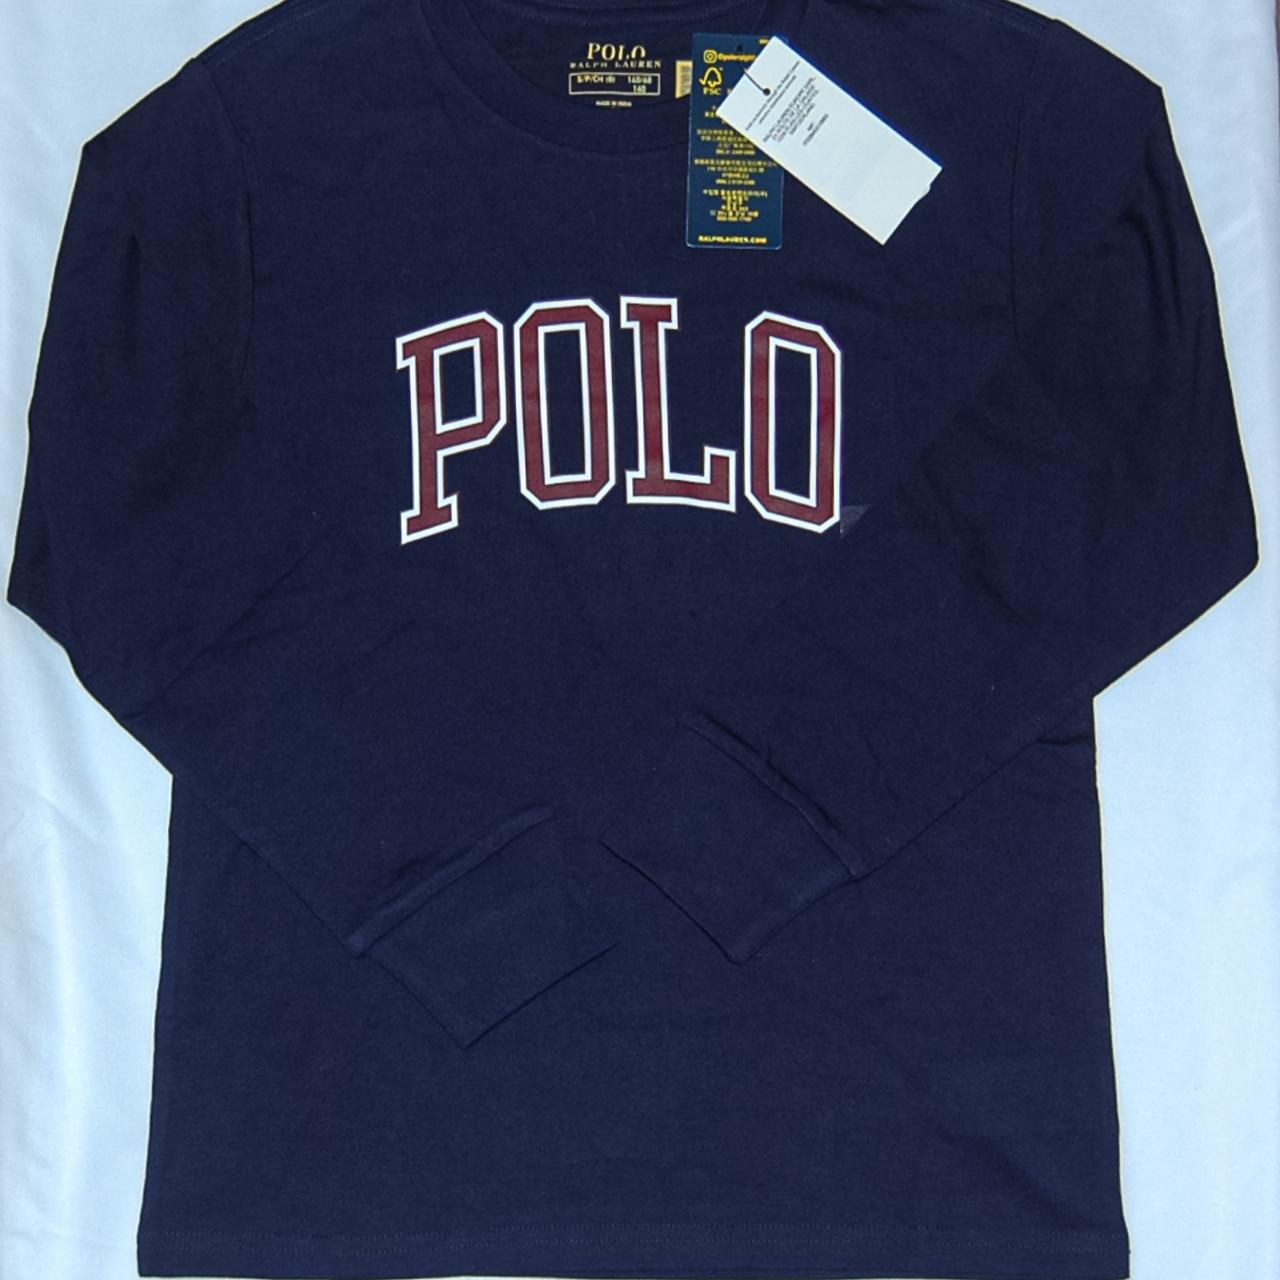 Classic Ralph Lauren Polo Logo T-Shirt Kids Size S/... - Depop